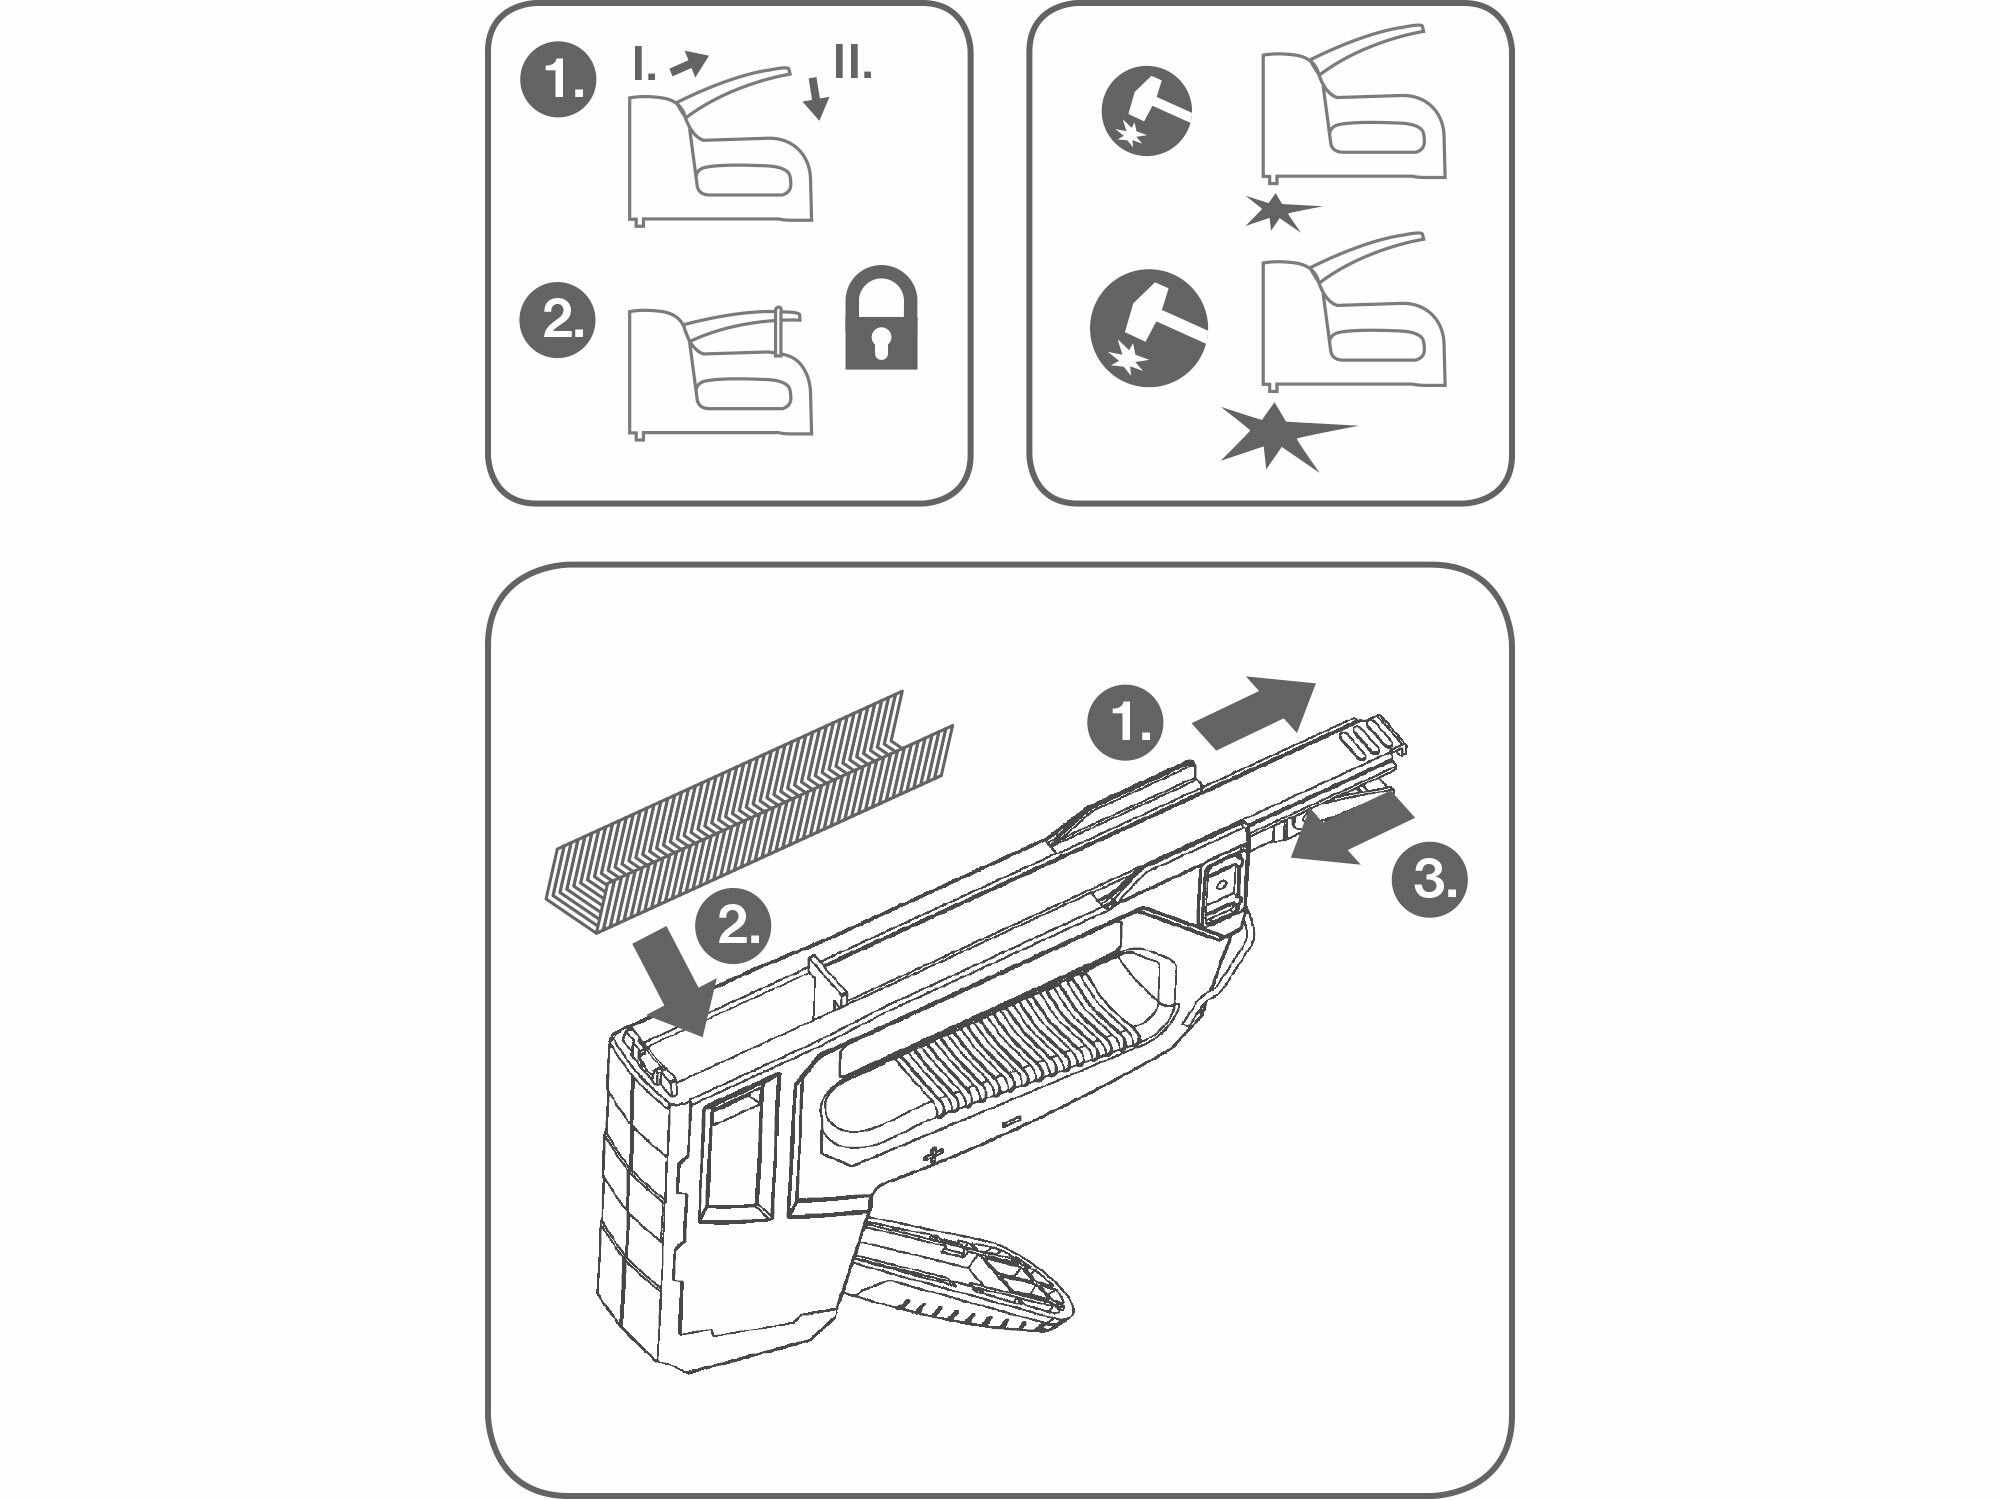 Pištoľ sponkovacia 6-funkčná, pre spony, káblové spony, klince a ihly, FORTUM